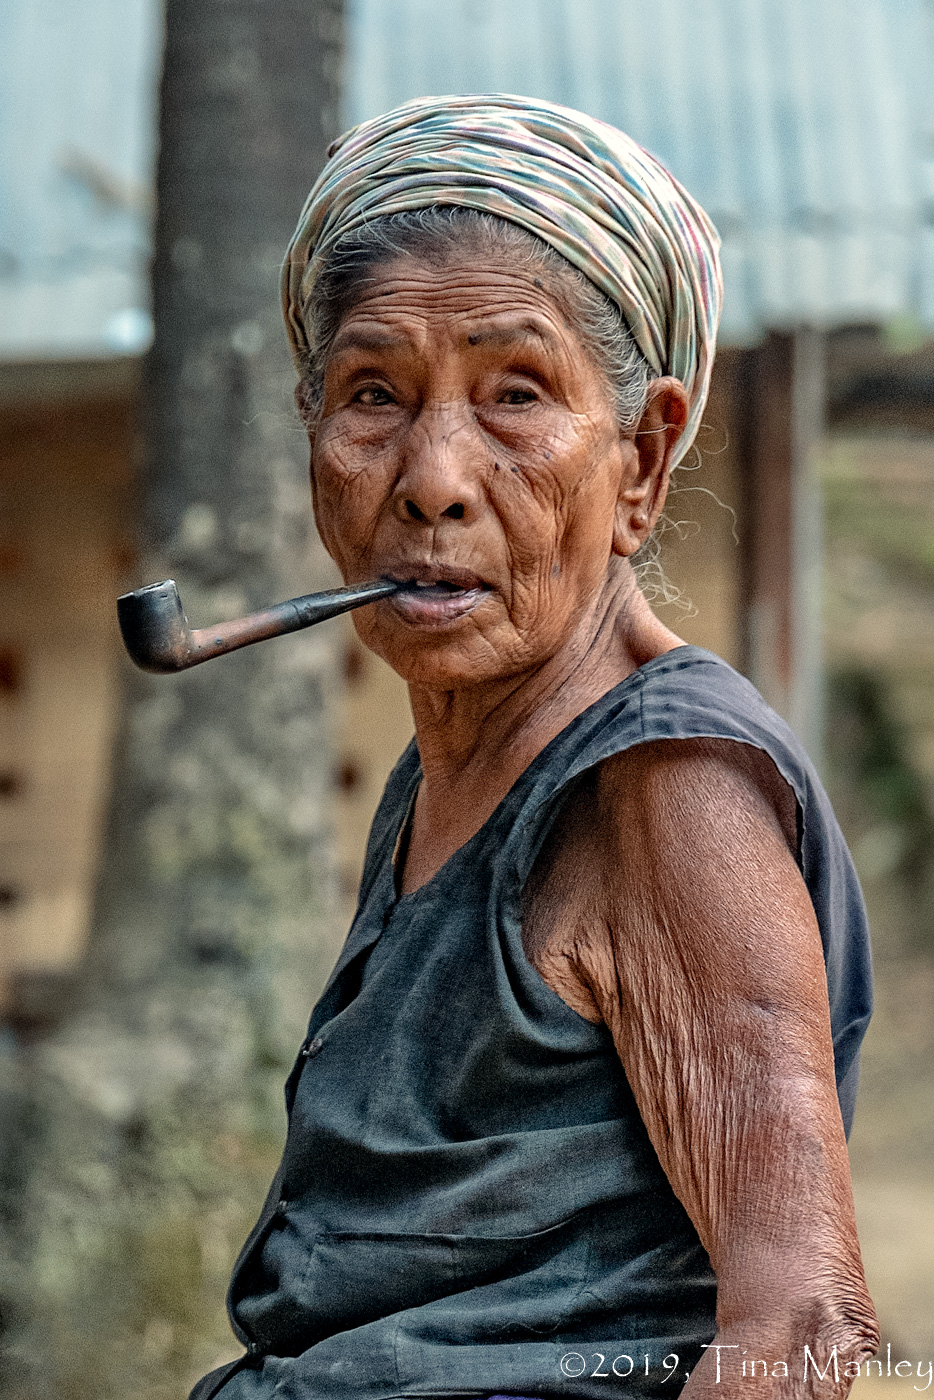 Pipe-smoking Grandma